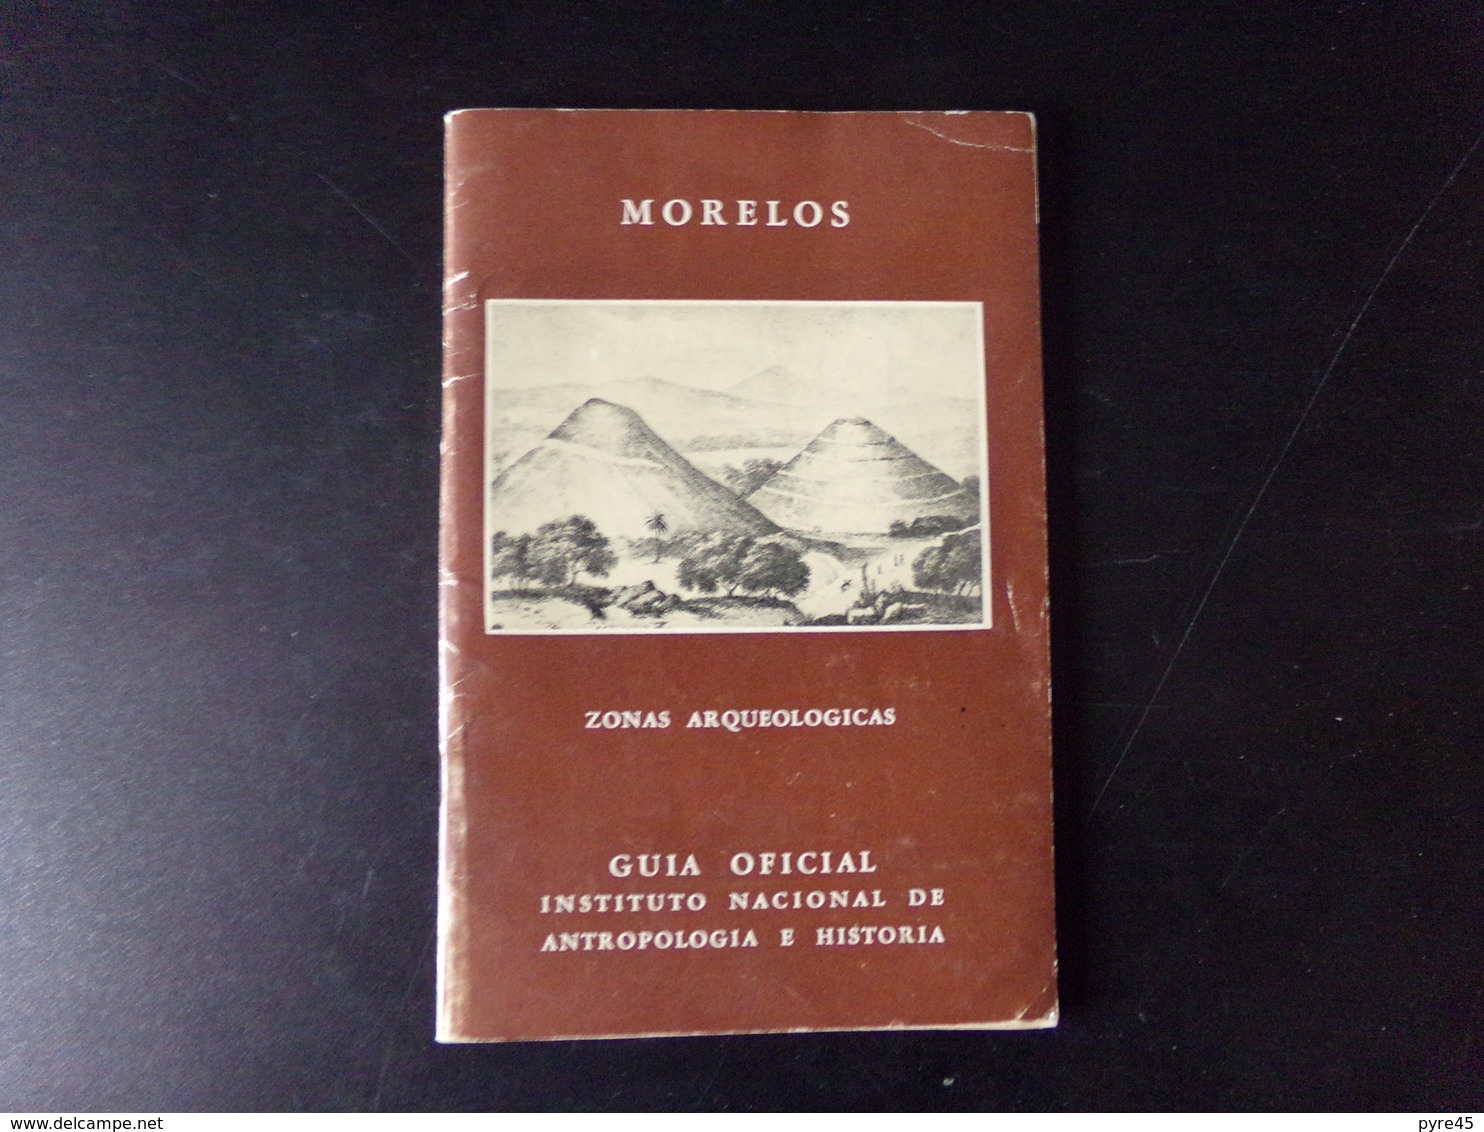 Morelos Zonas Arqueologicas Par Noguera, 1960, 71 Pages - Cultural